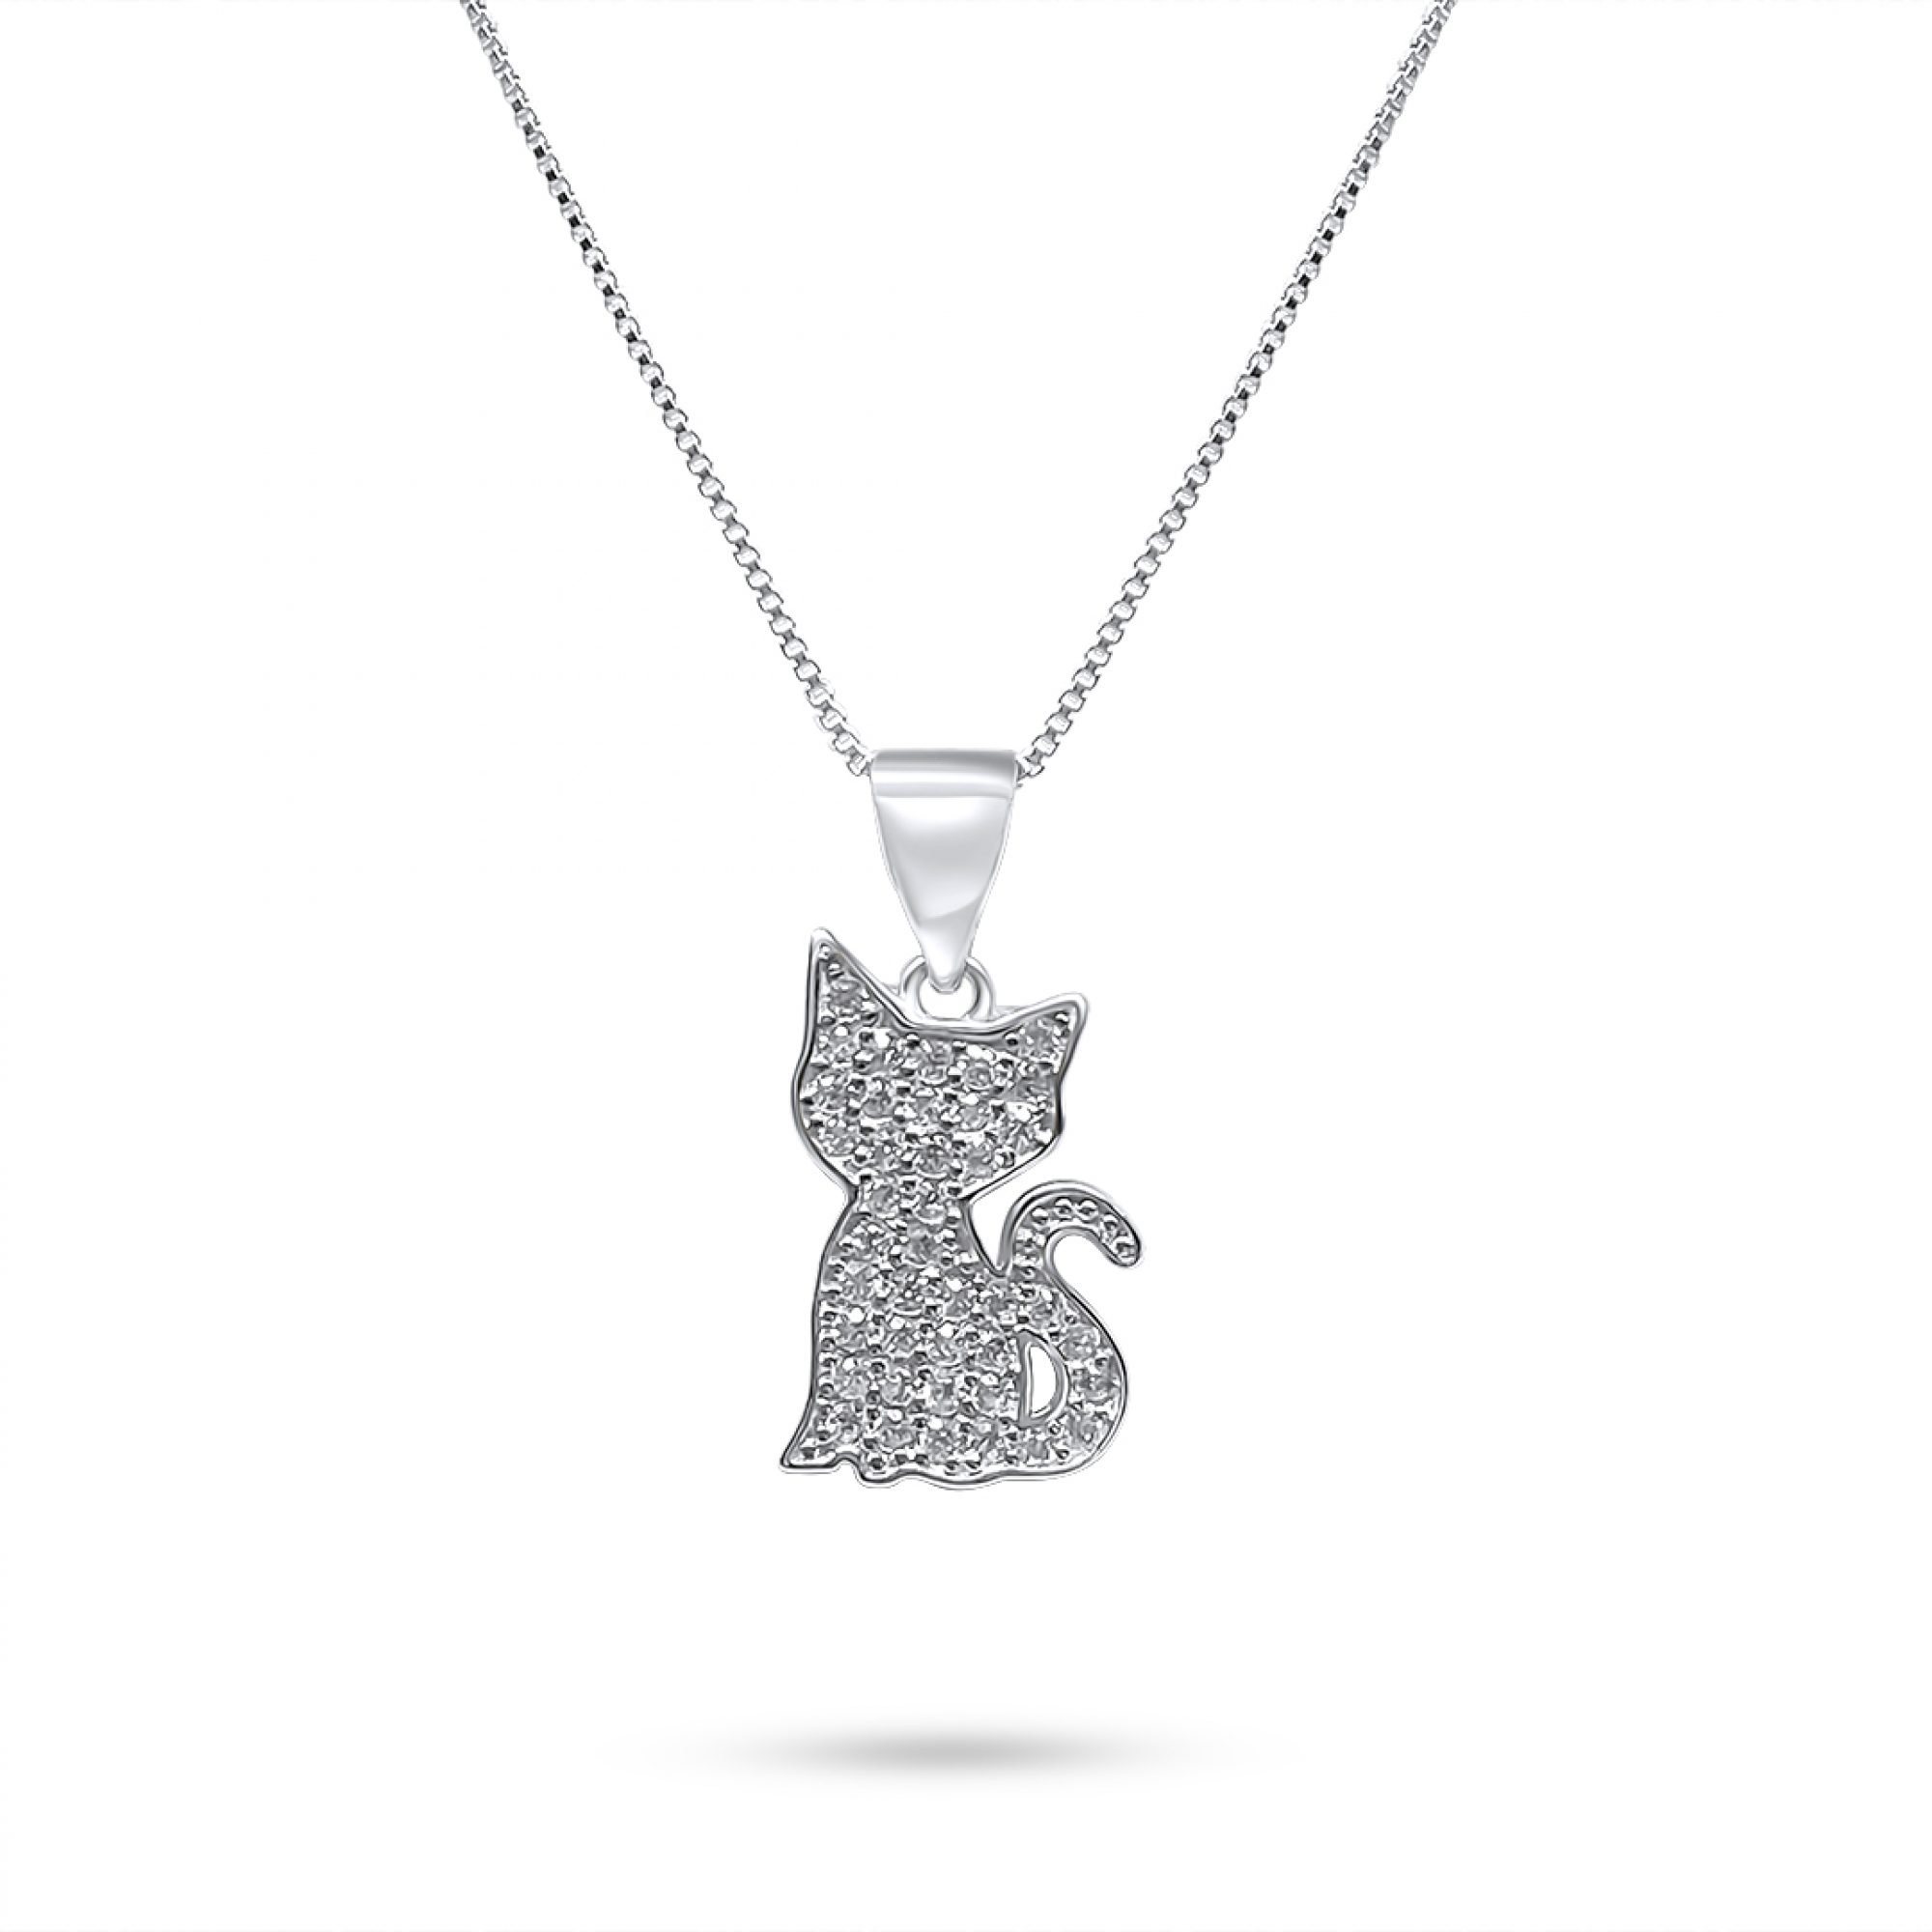 Cat necklace with zircon stones